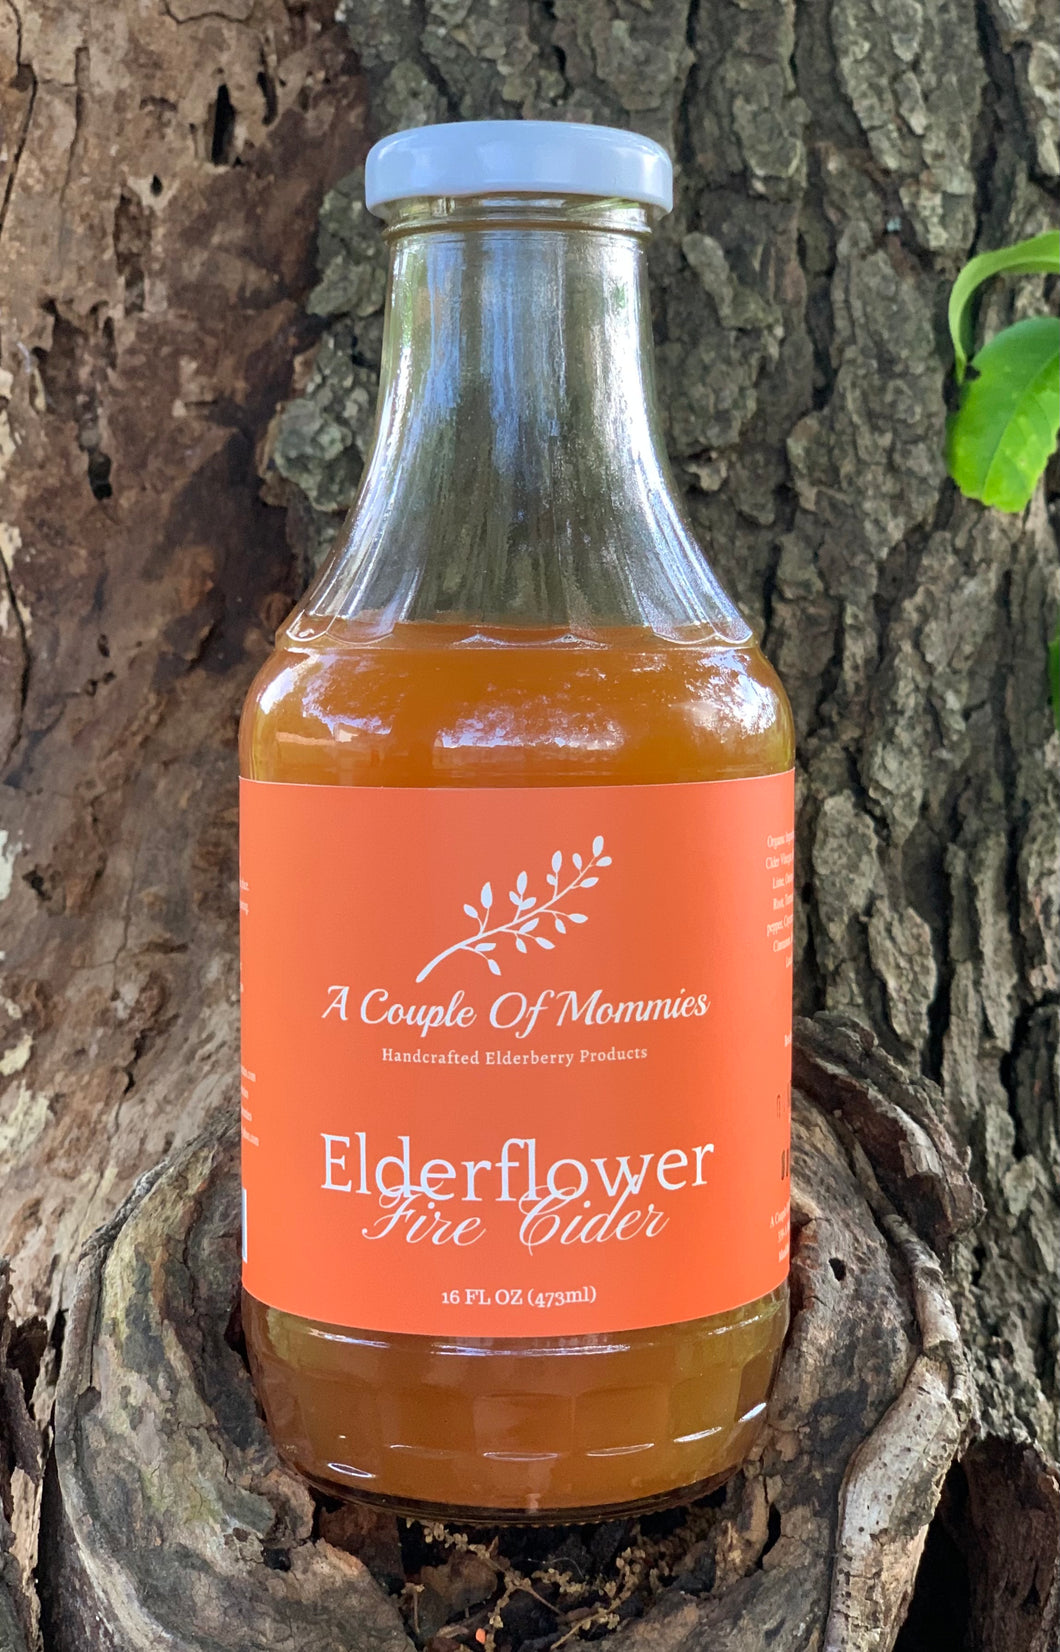 Elderflower Fire Cider